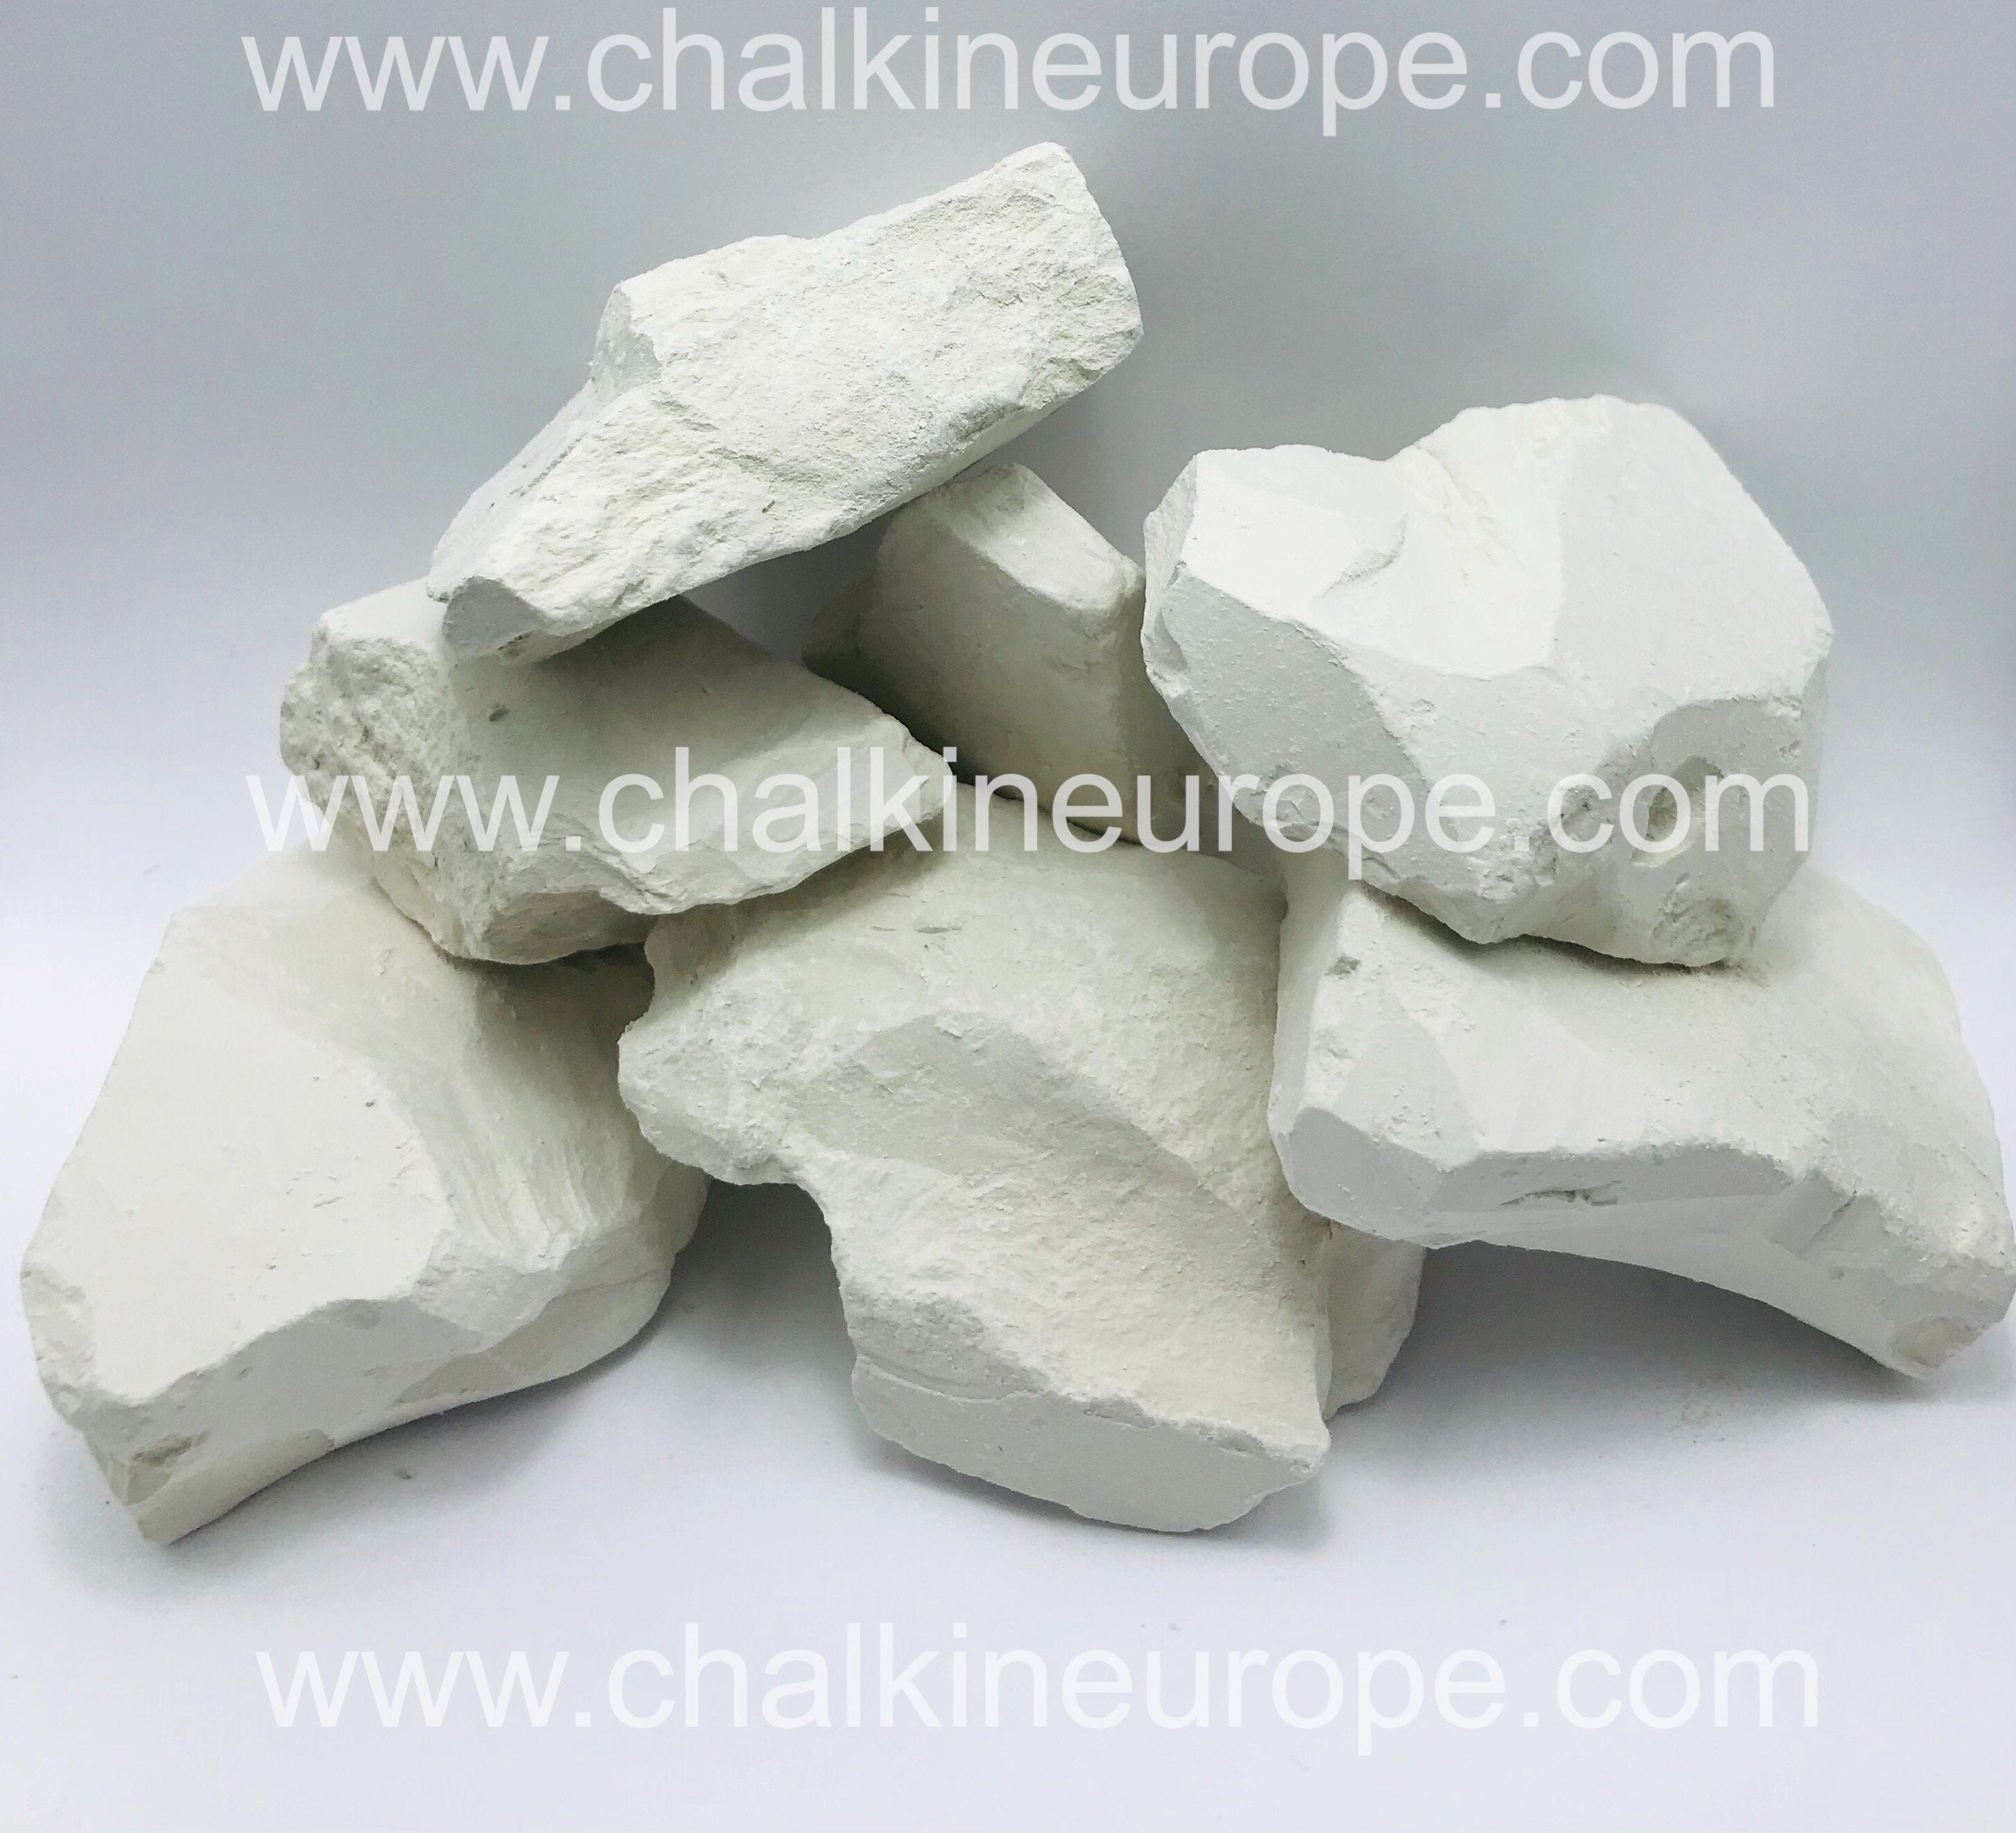 Pārtikas baltais māls - Chalkineurope